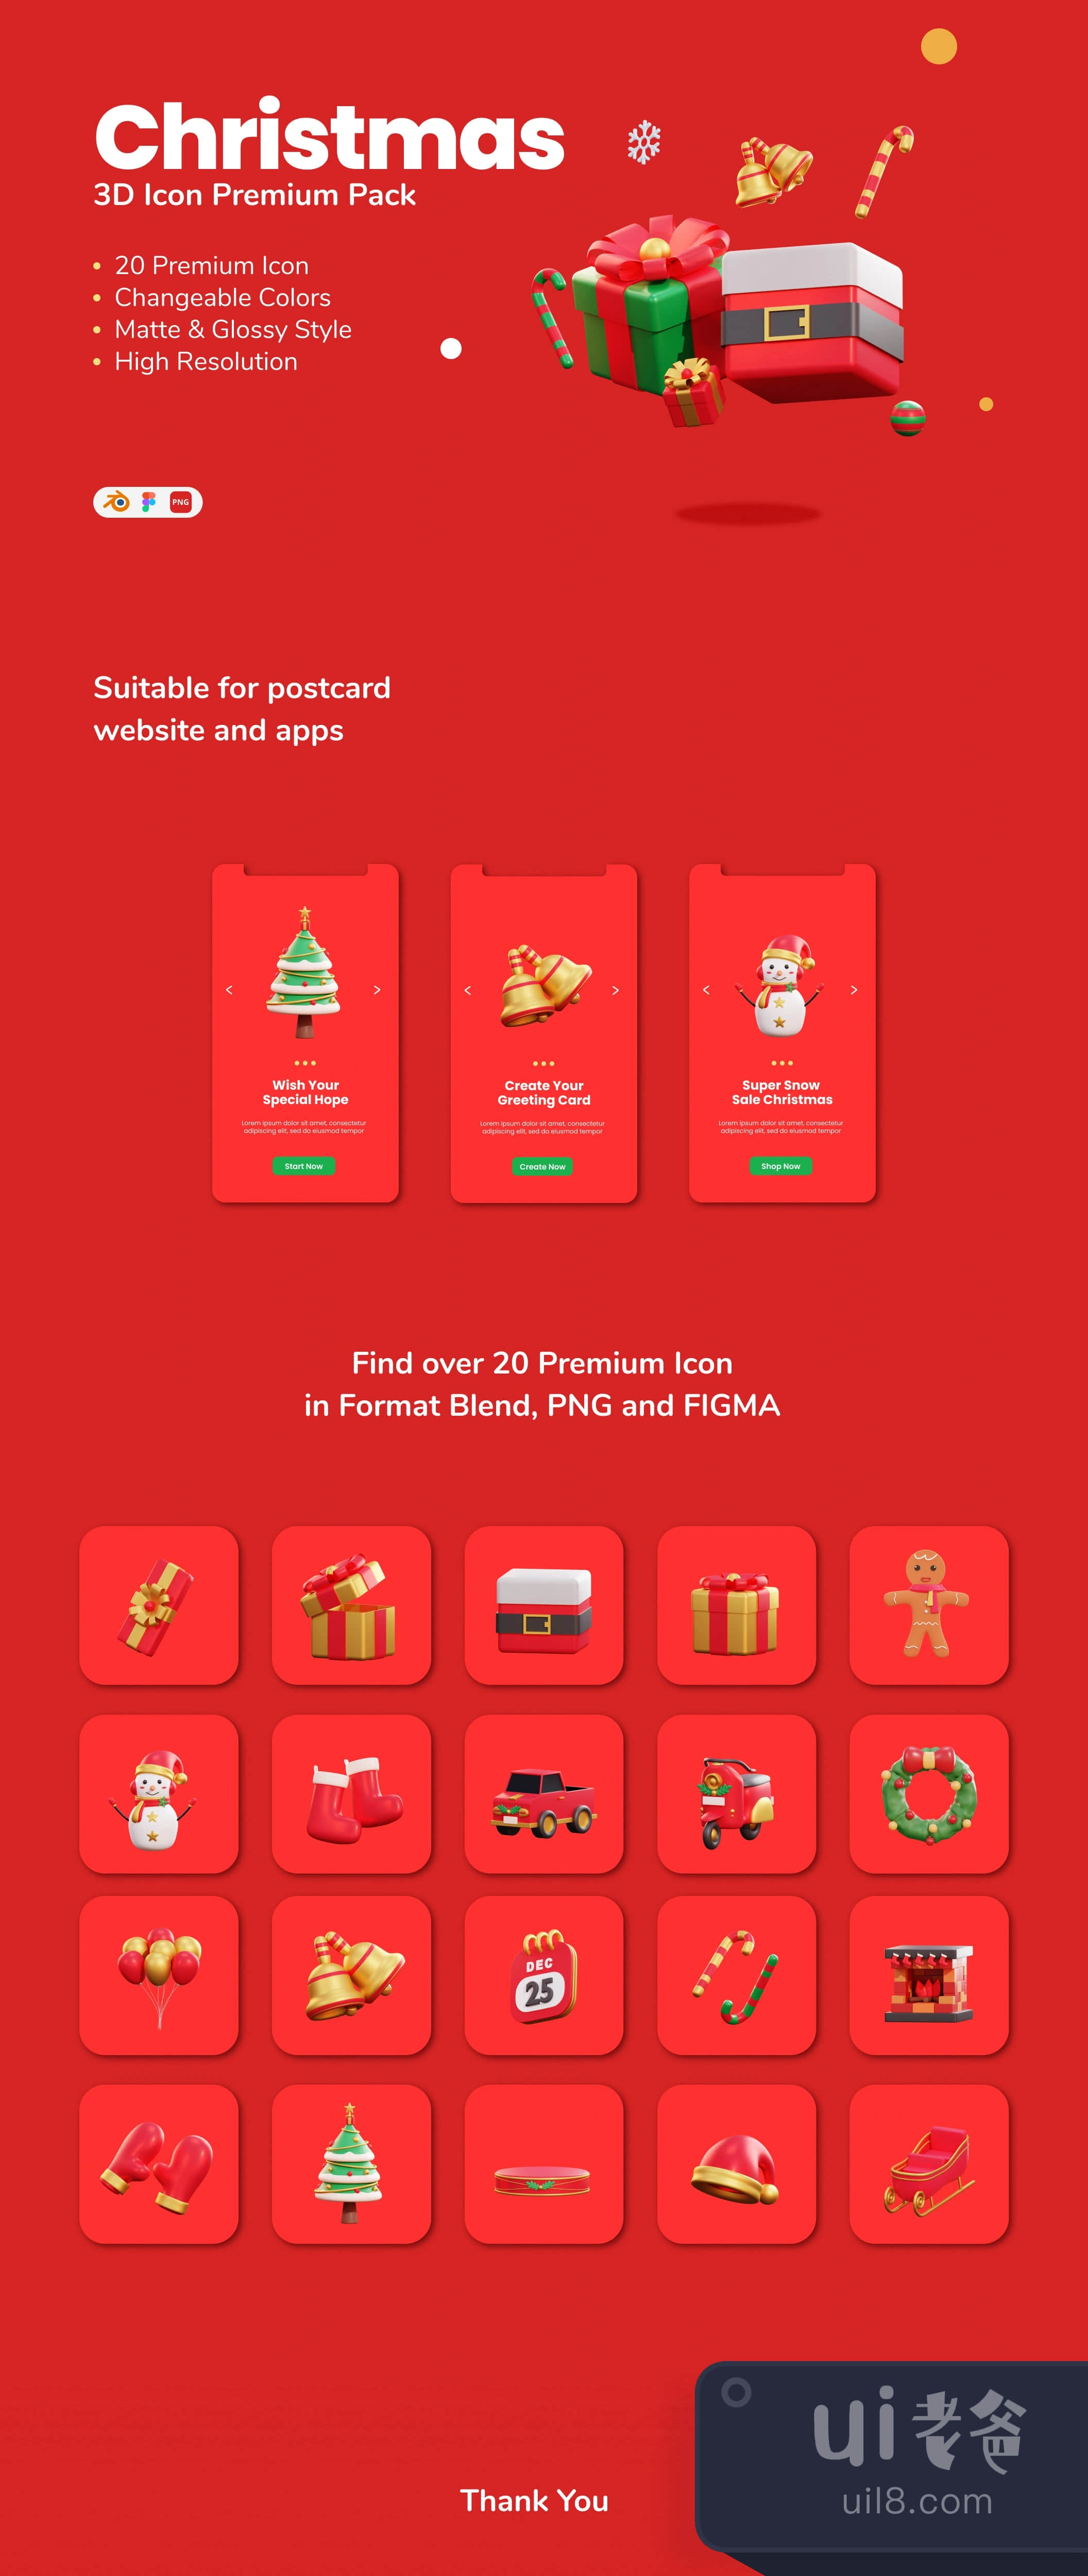 圣诞节 - 3D图标高级包 (Christmas - 3D Icon Premium Pack)插图